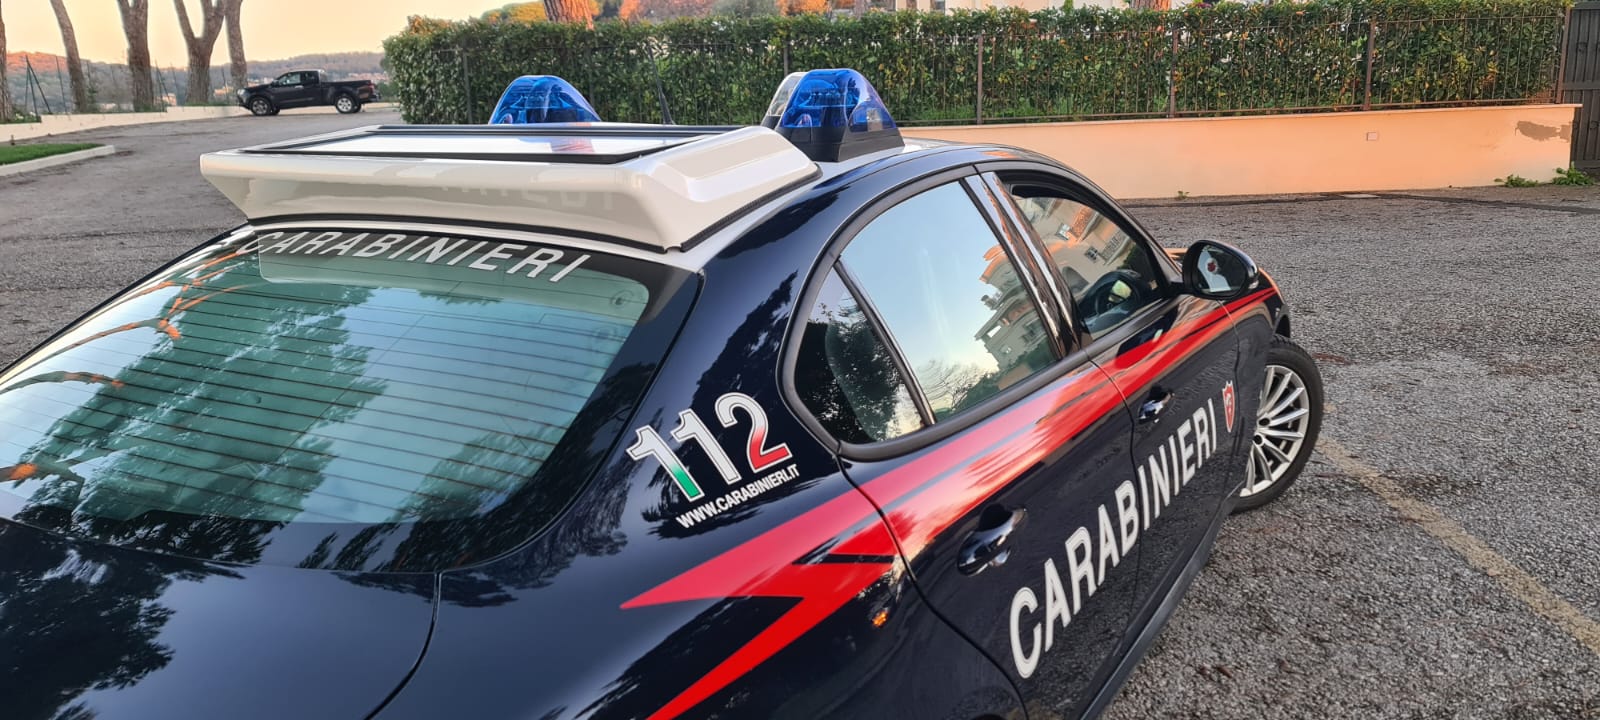 Arrestato dai carabinieri per estorsione un uomo che ha minacciato il titolare di un ristorante affinché gli consegnasse del denaro.